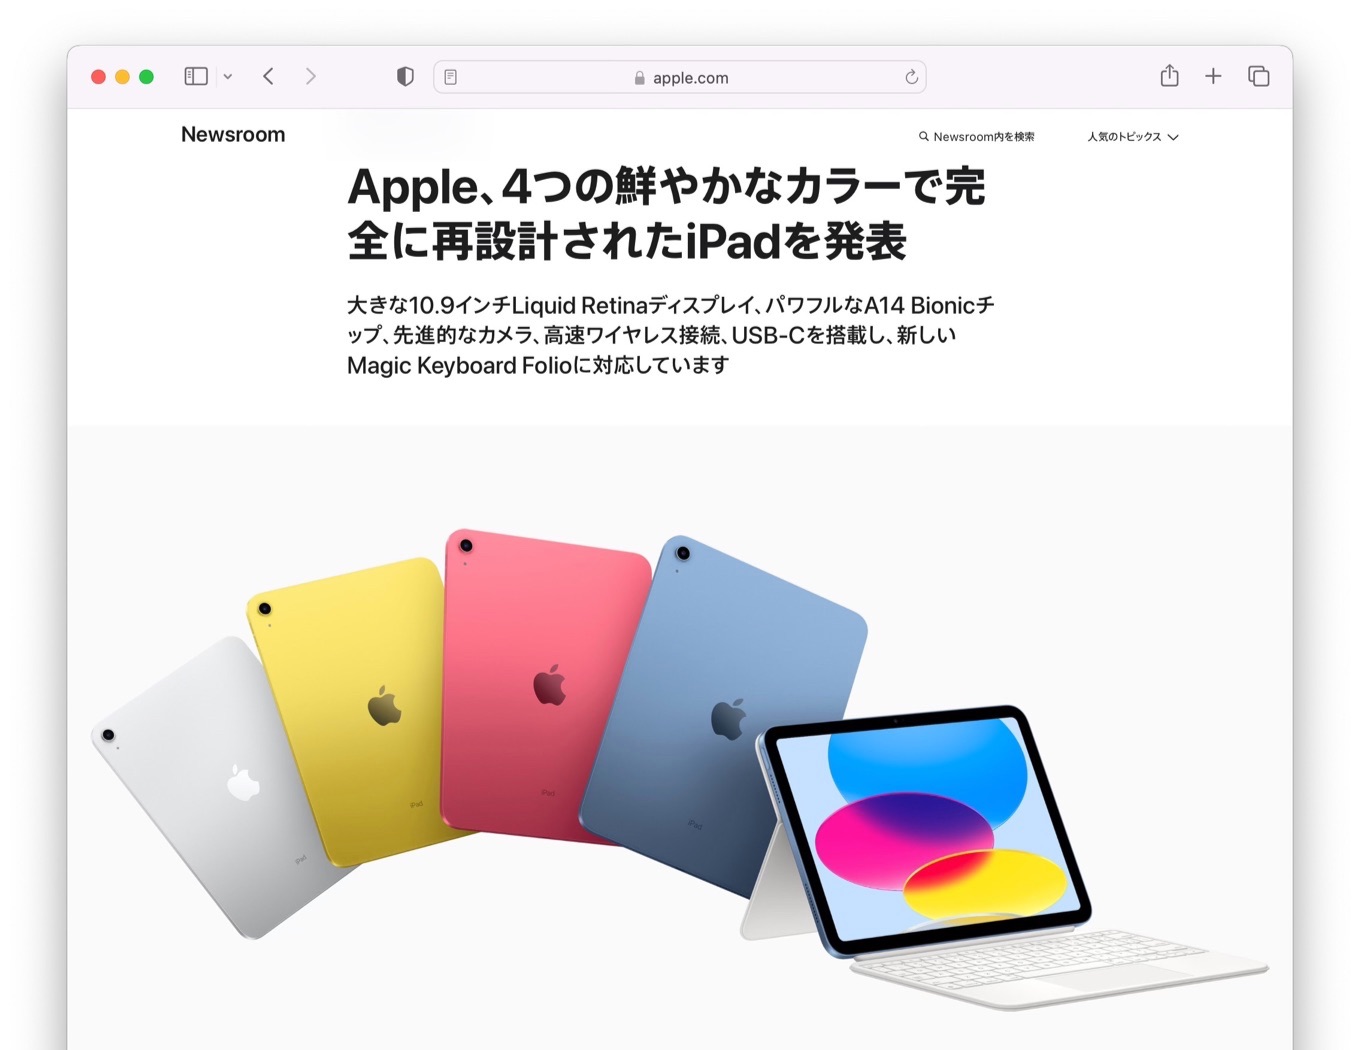 Apple、4つの鮮やかなカラーで完全に再設計されたiPadを発表